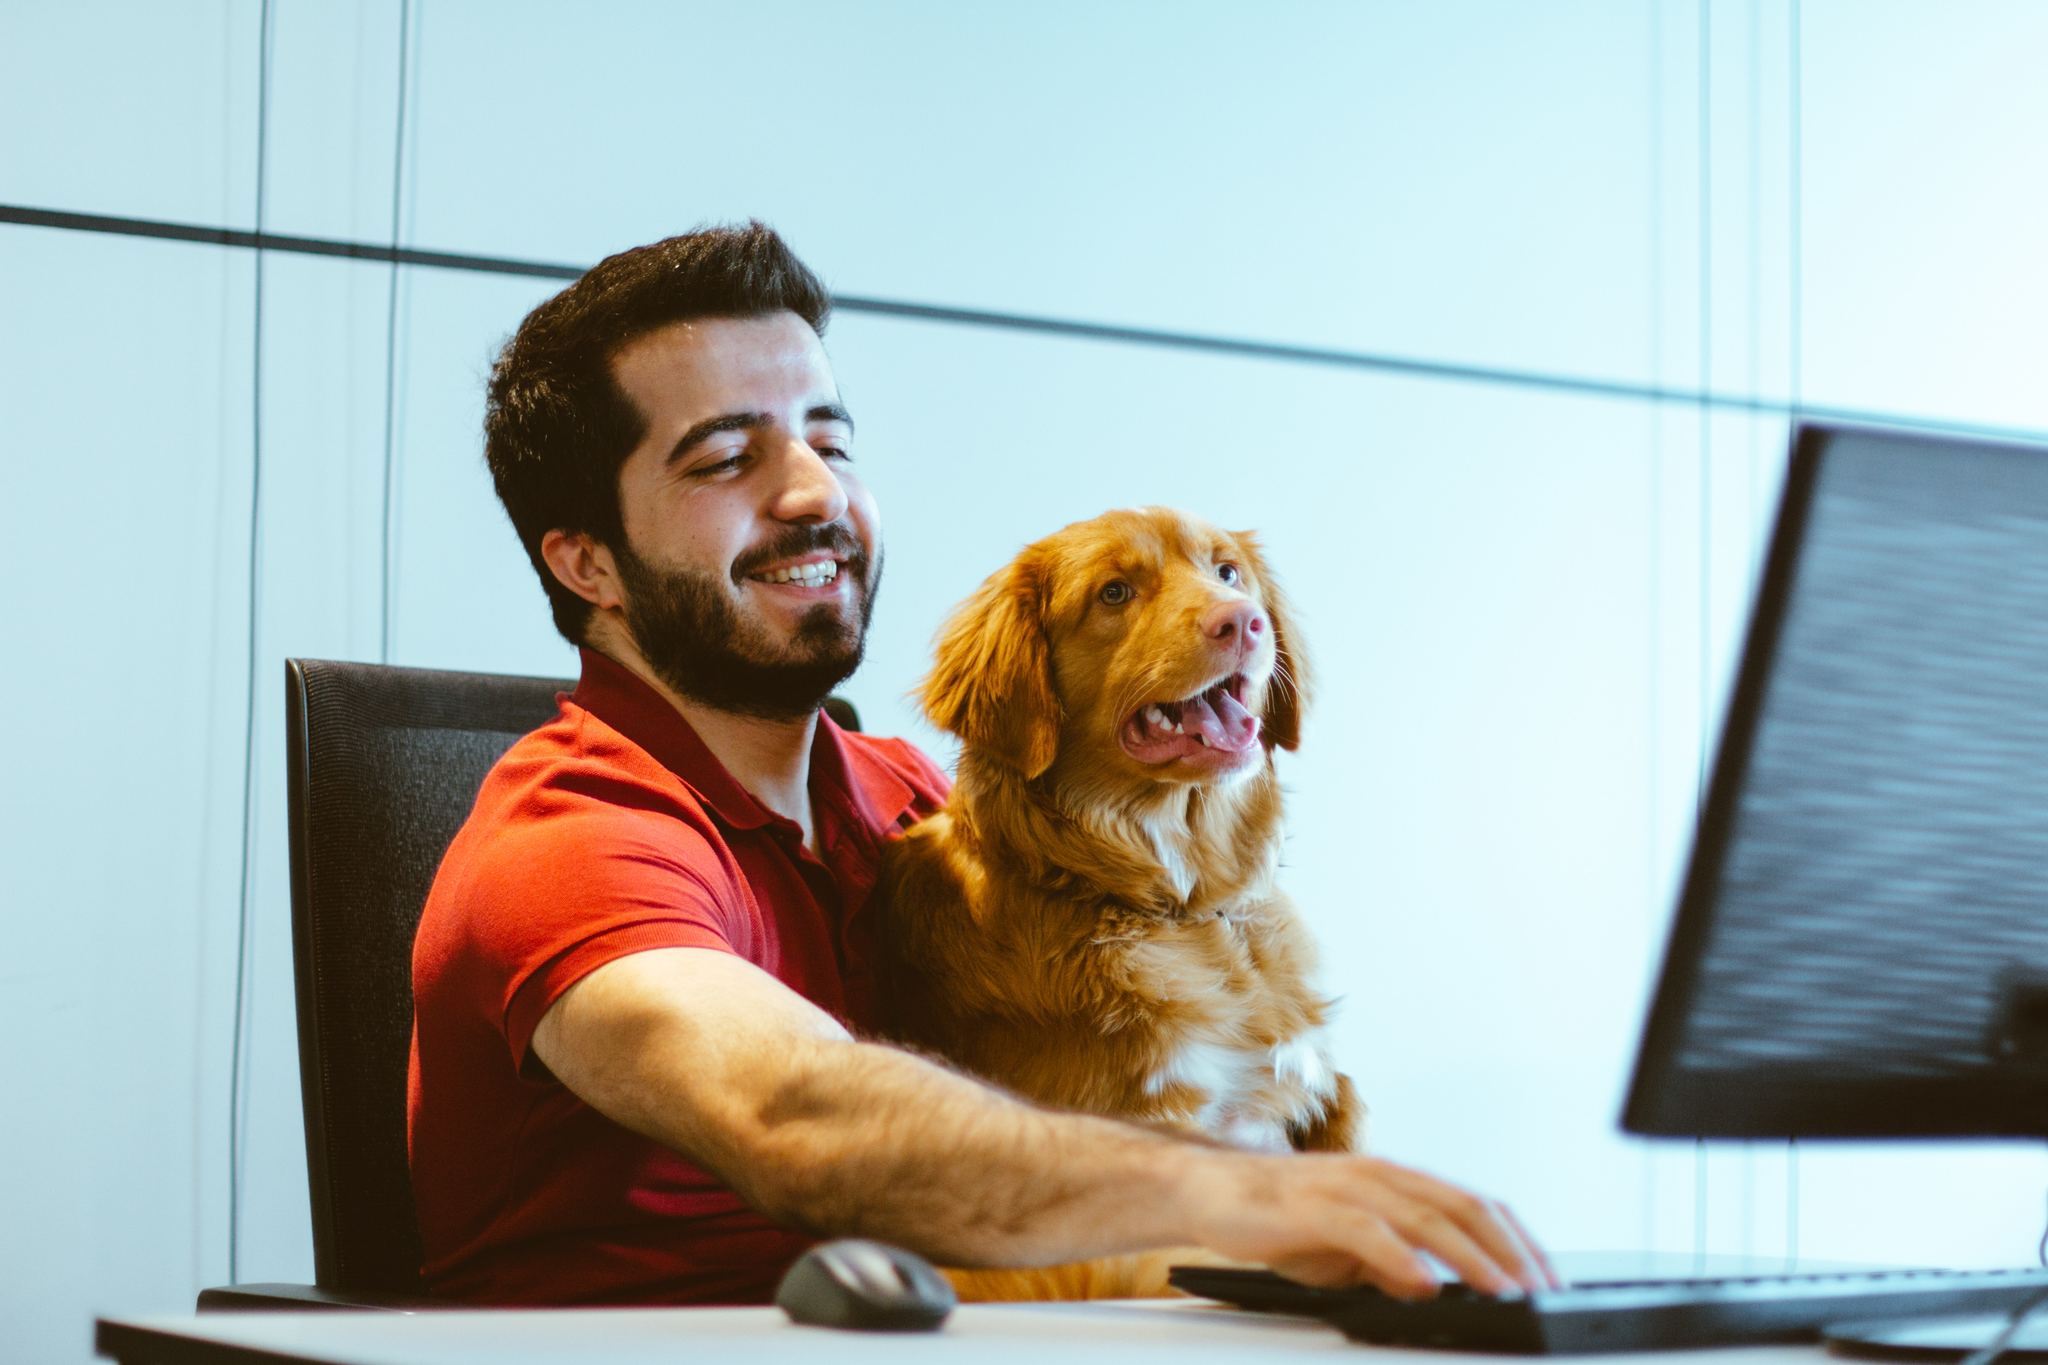 A kutya jelenléte a munkahelyen jótékony hatású lehet - ha megfelelően van szervezve és szabályozva a munkahelyi környezet